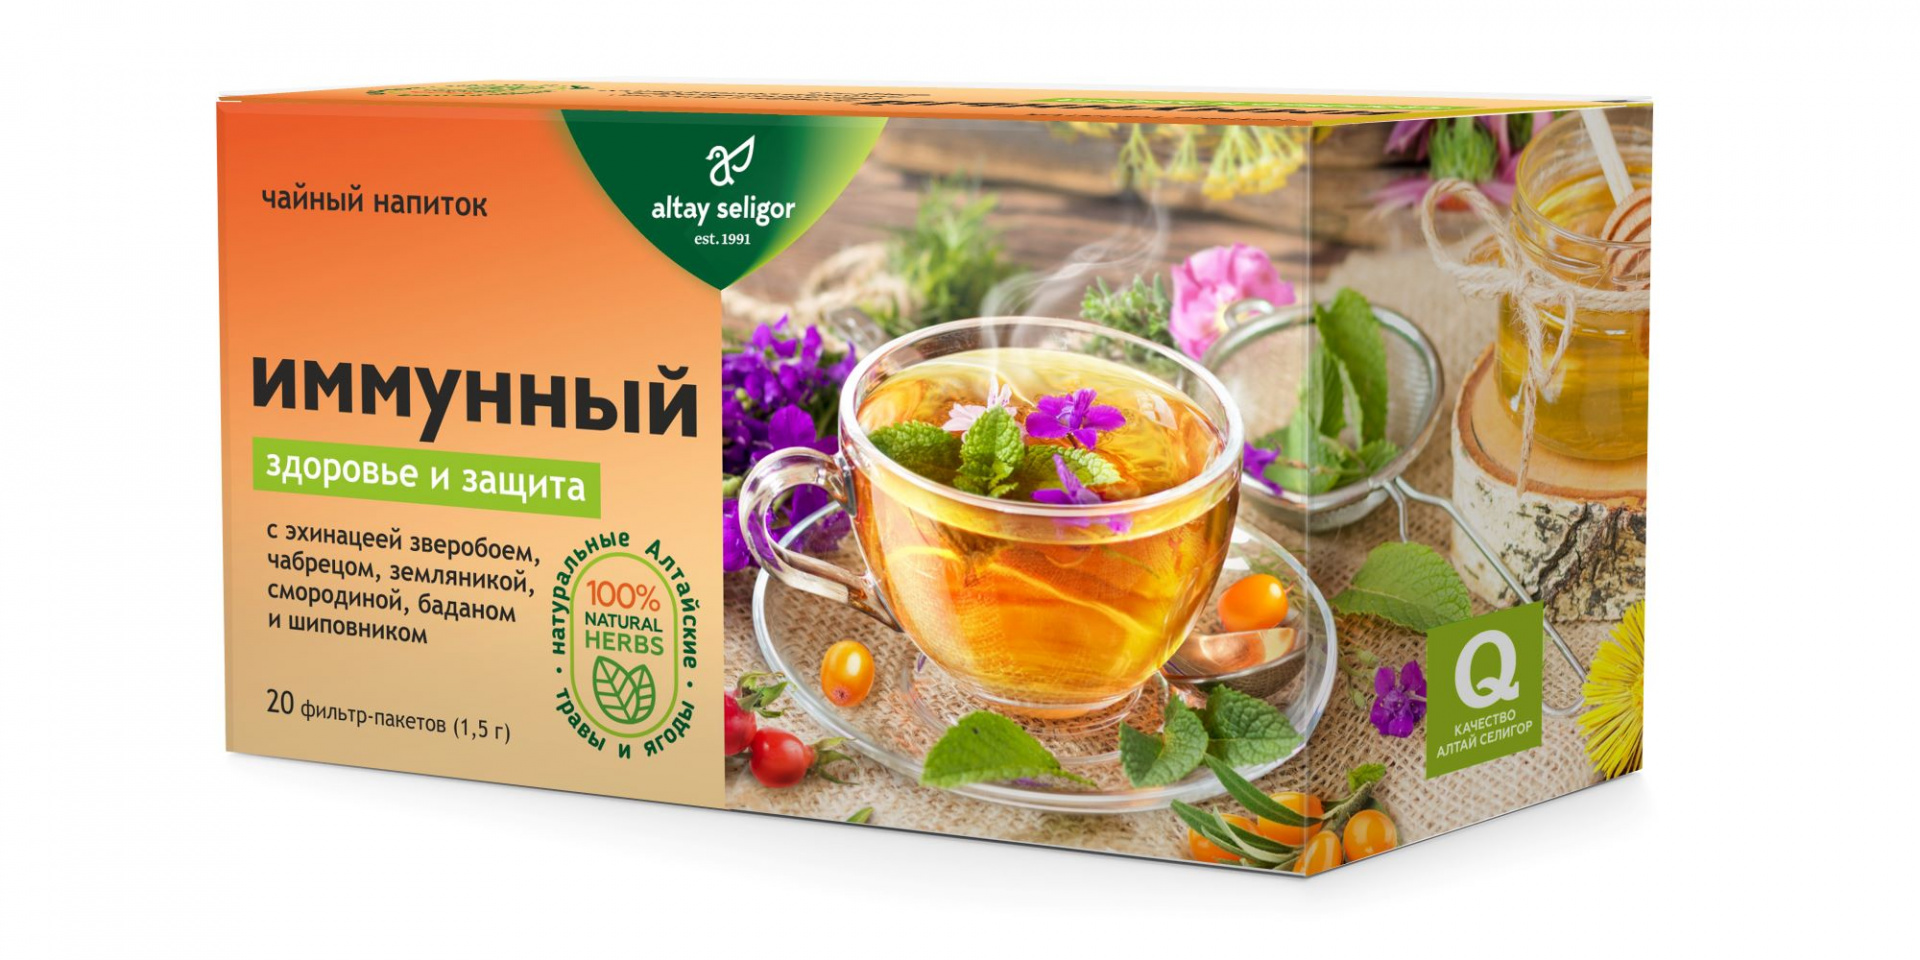 Травяной чай Иммунный, 20 ф-п*1,5 гр, Алтай Селигор чай травяной ягодная россыпь 50 гр алтай селигор